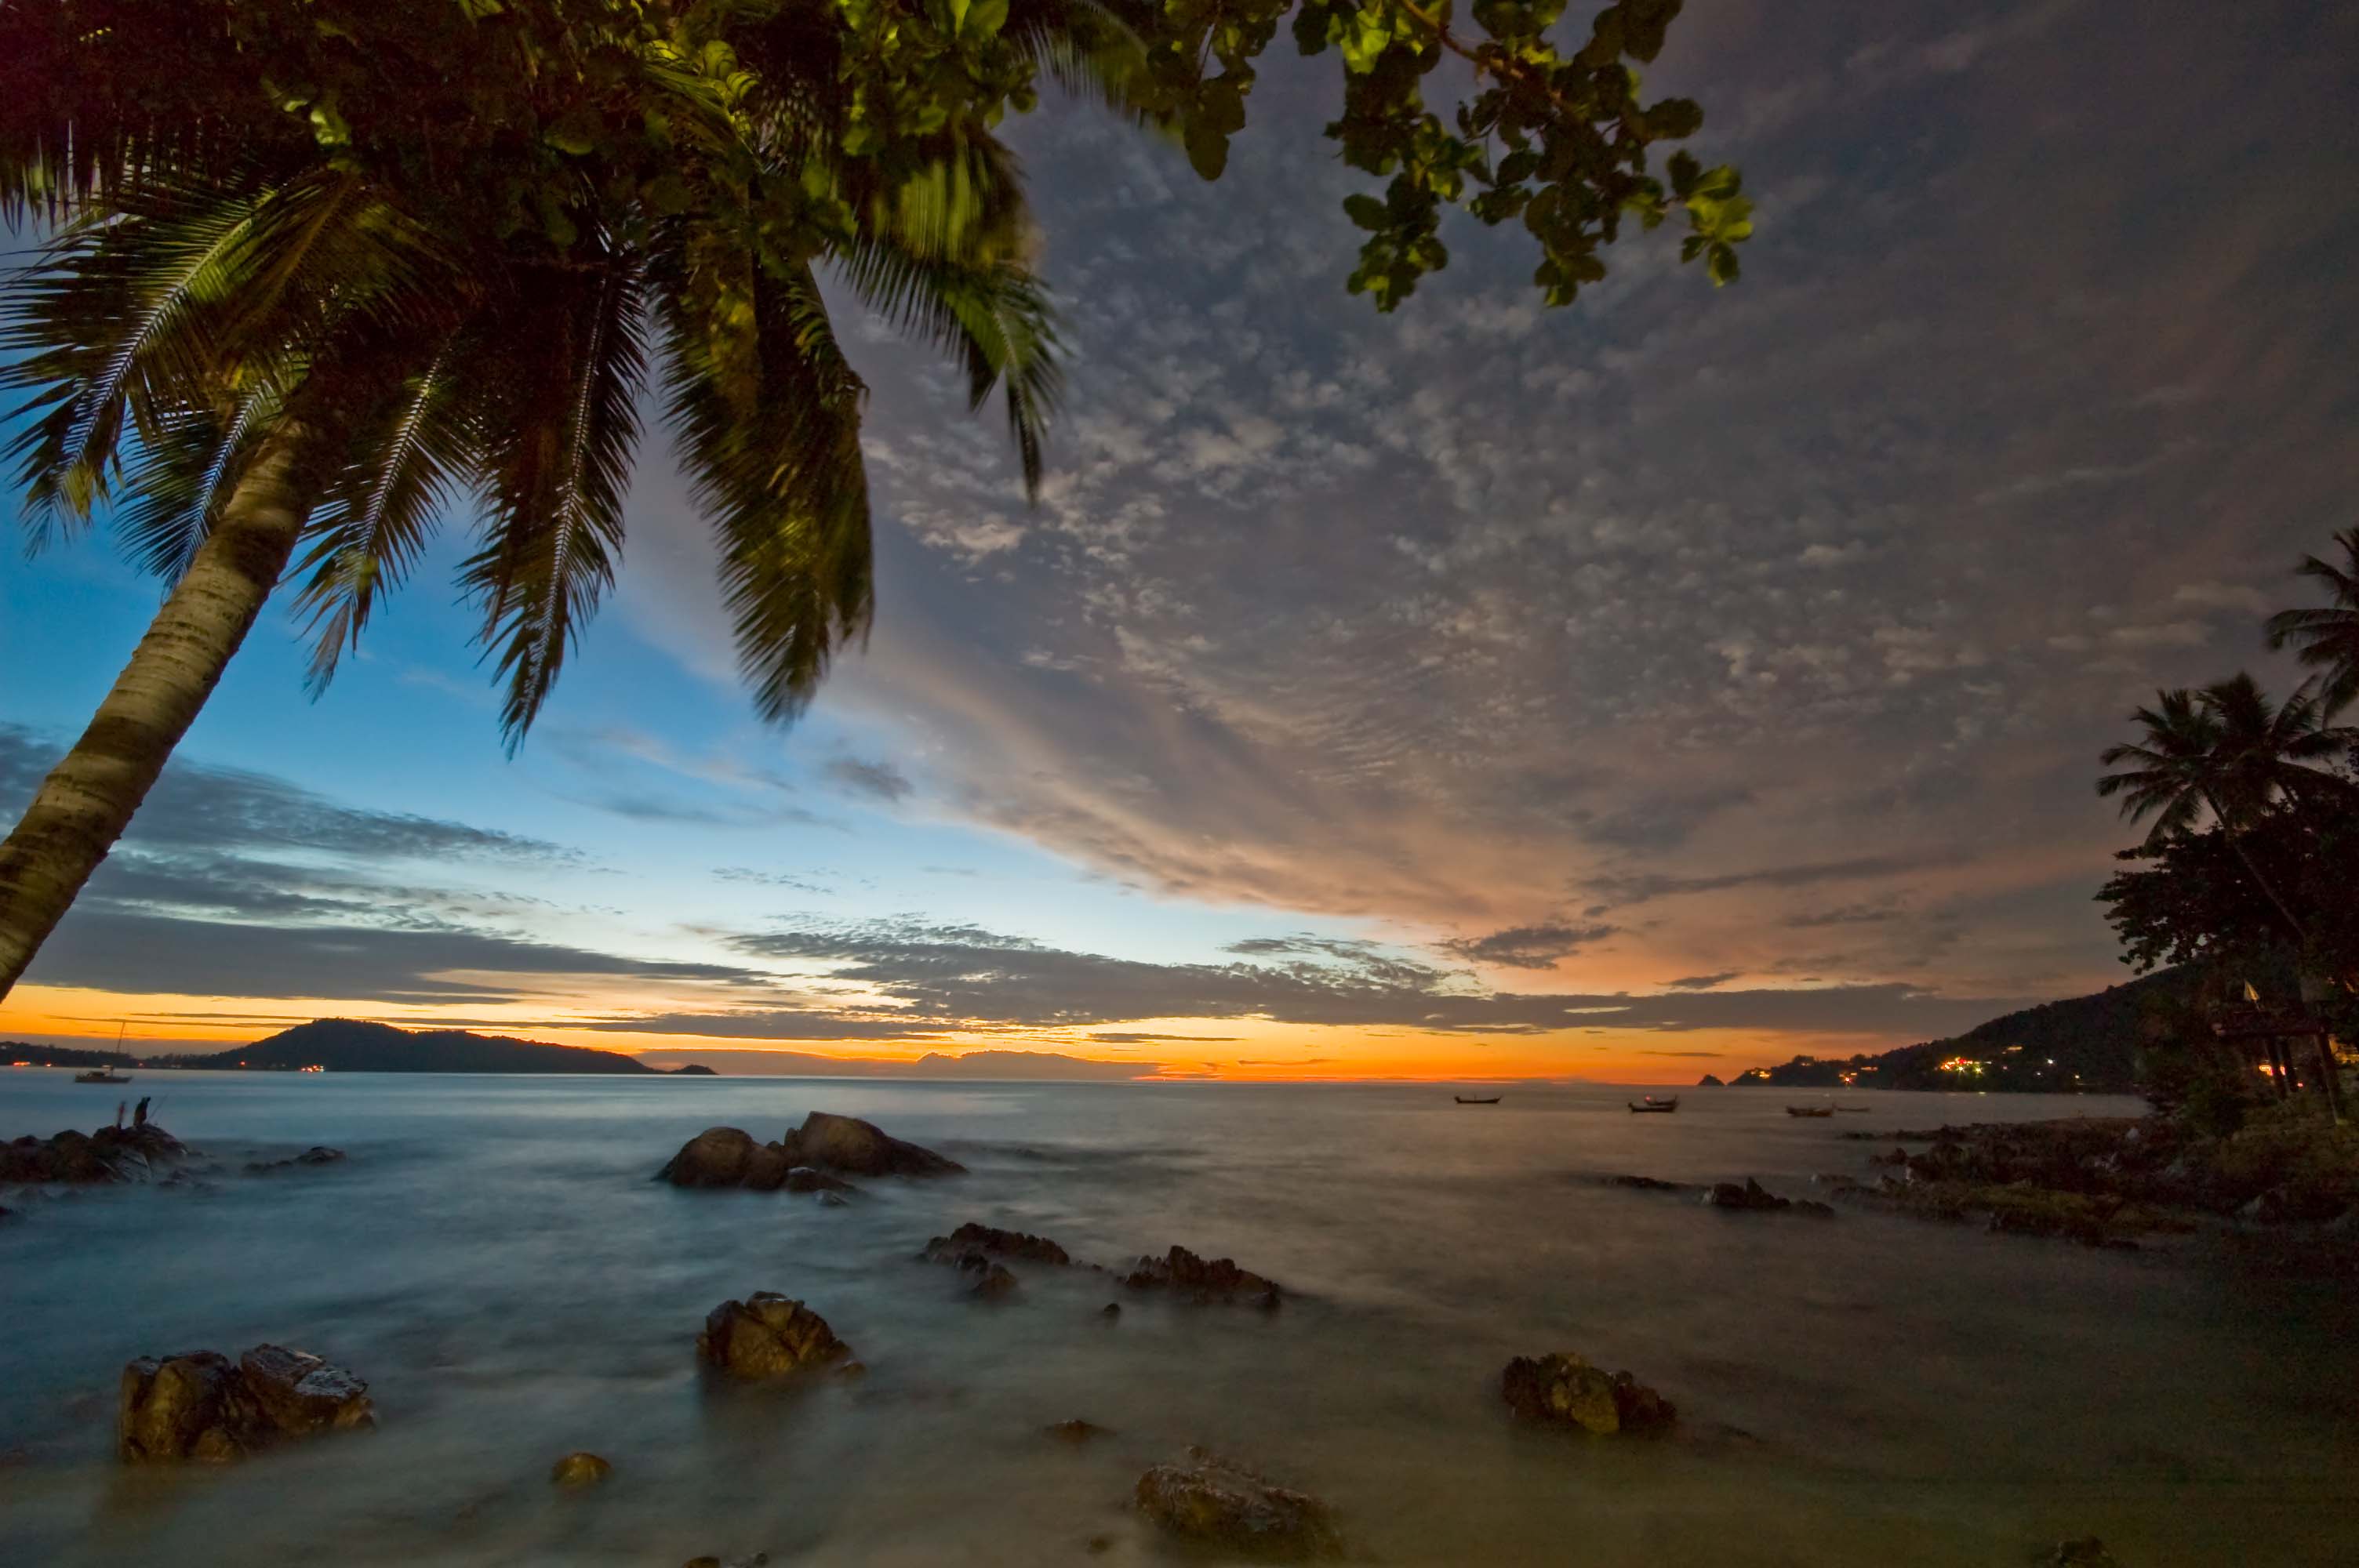 Palm tree at dawn, Patong beach